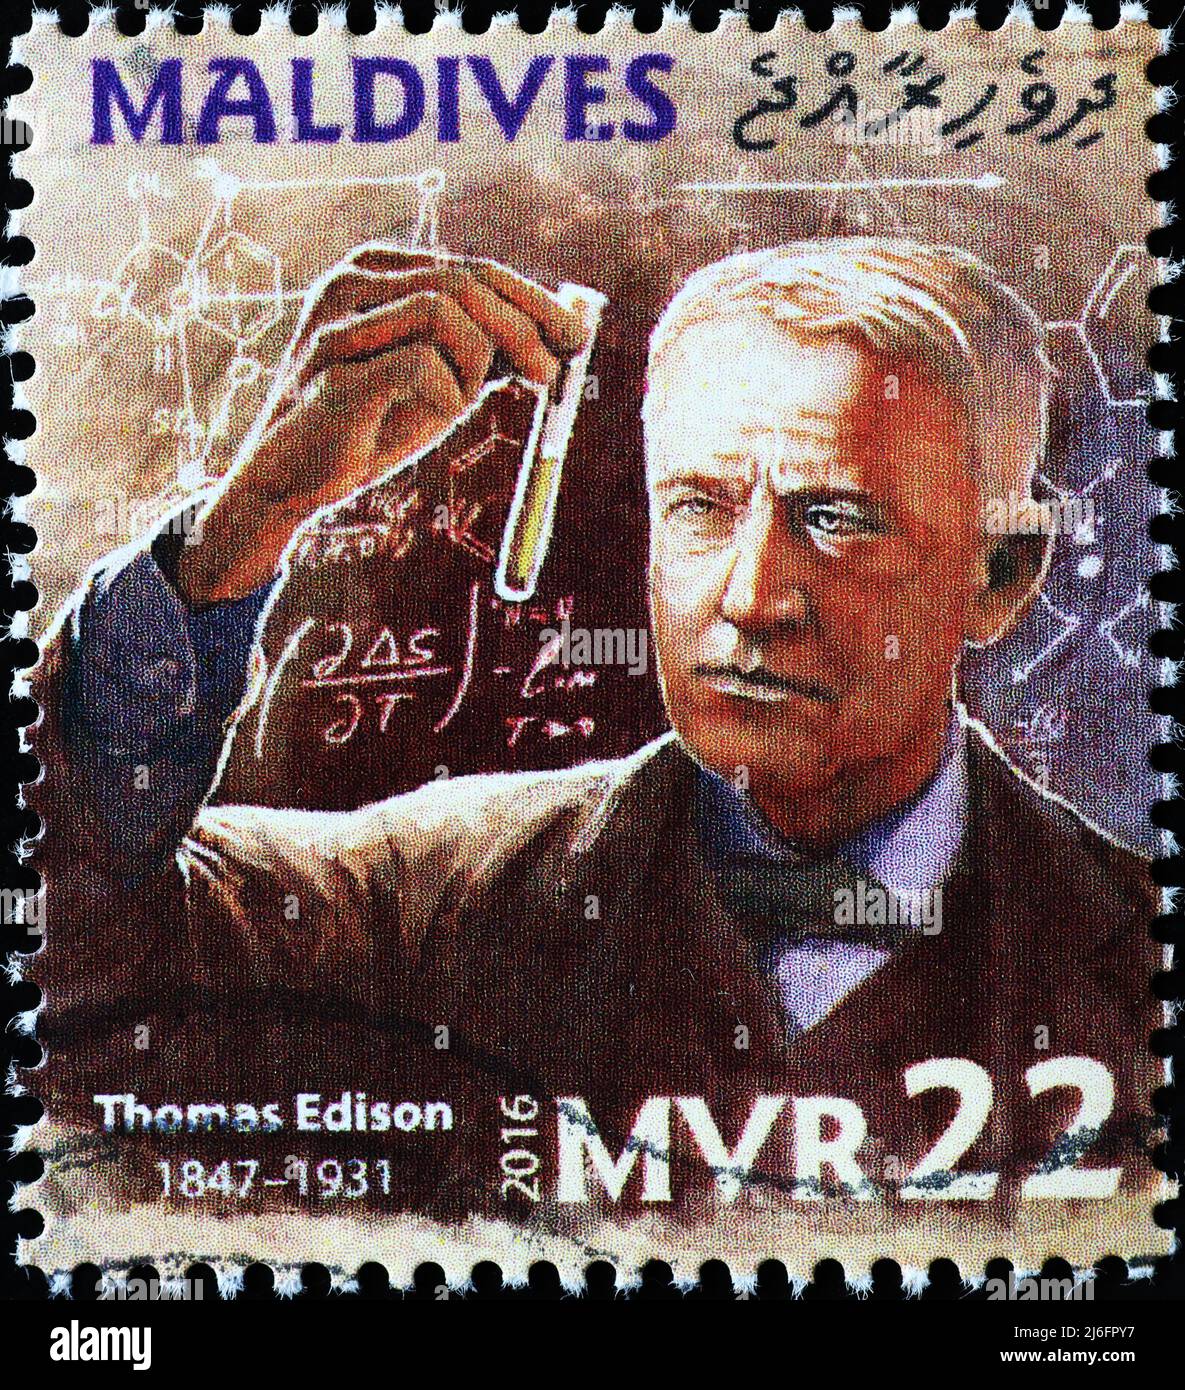 Le scientifique Thomas Edison sur timbre-poste des Maldives Banque D'Images